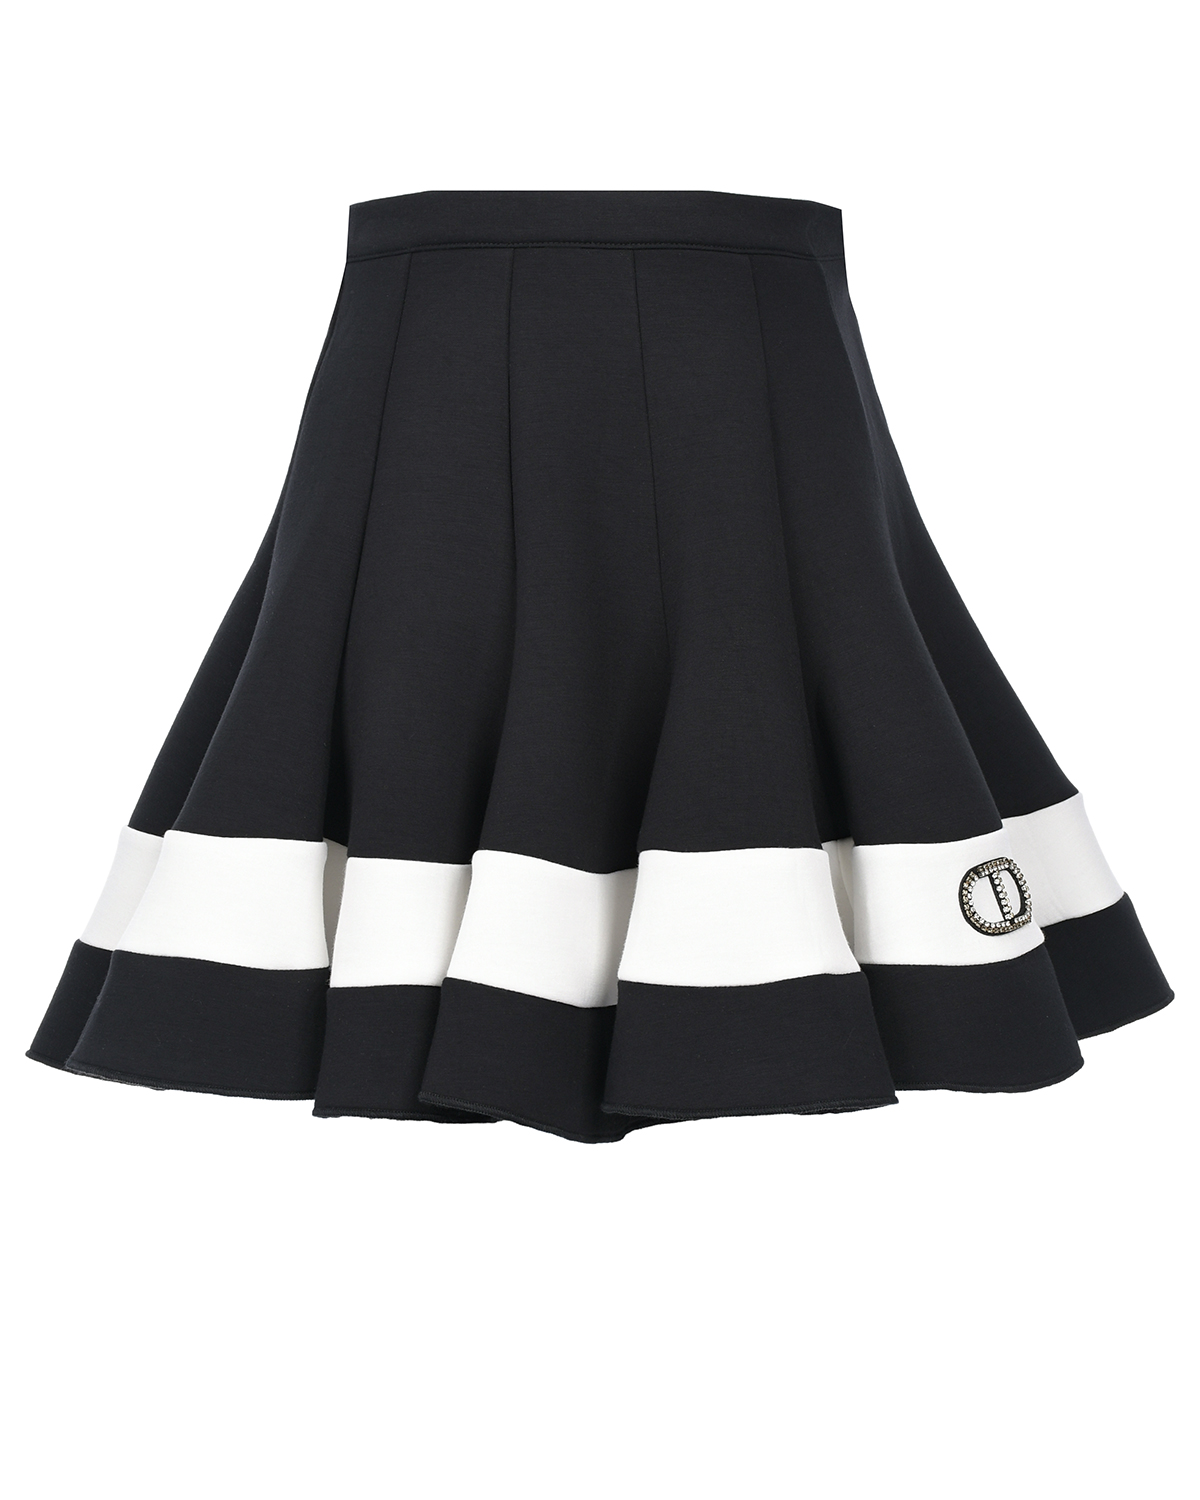 Расклешенная юбка с отделкой белой полосой TWINSET детская, размер 128, цвет черный - фото 1